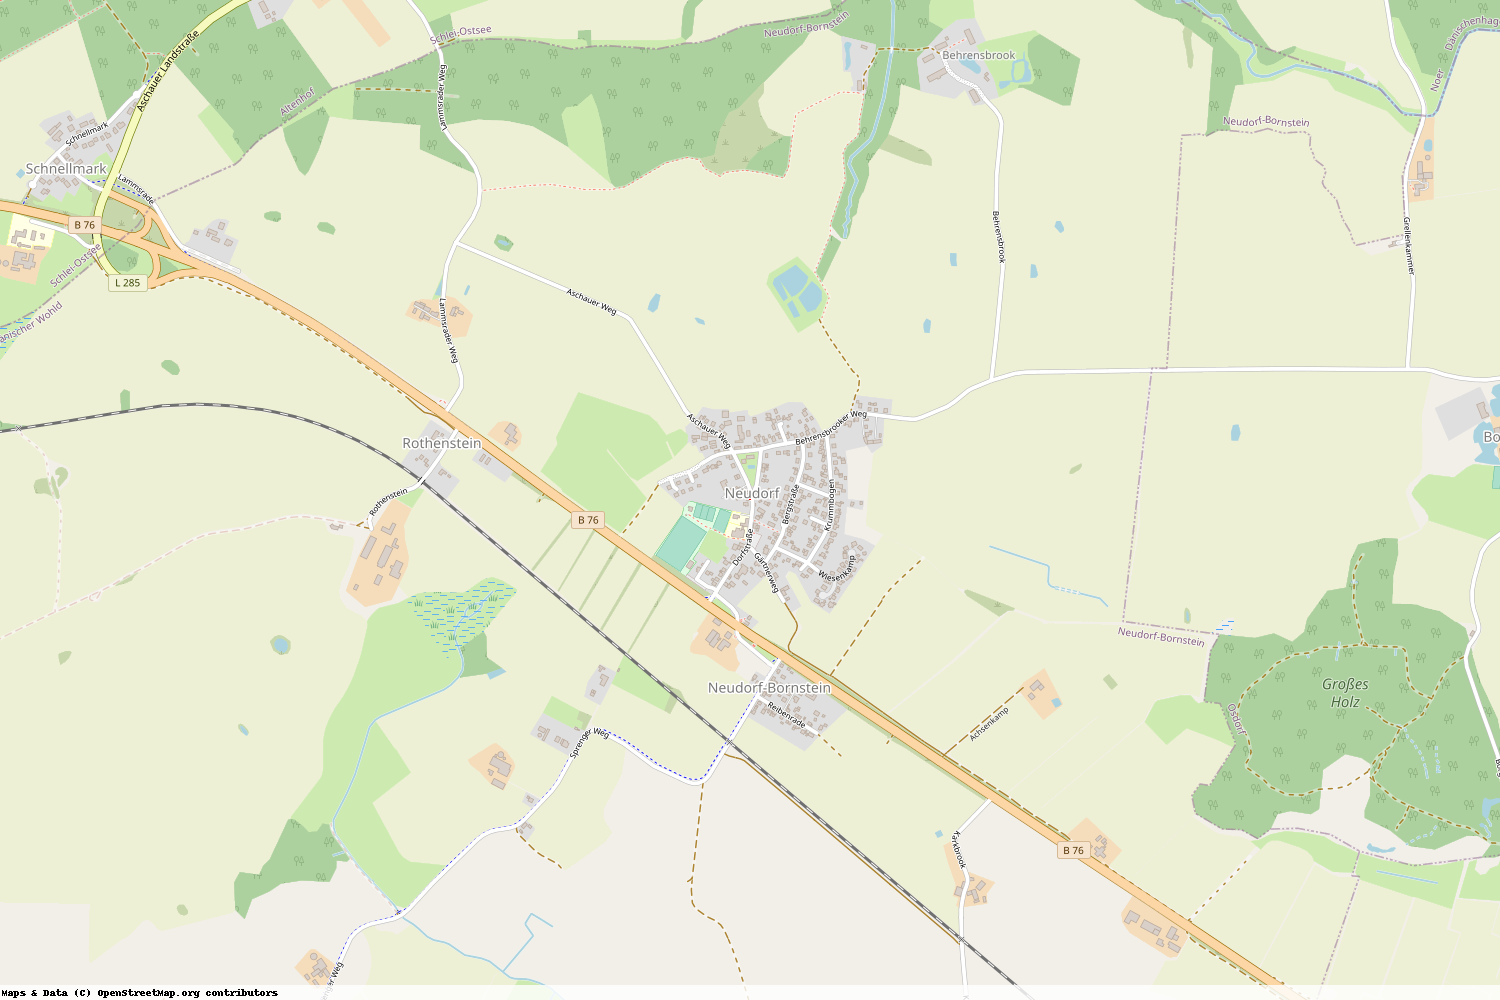 Ist gerade Stromausfall in Schleswig-Holstein - Rendsburg-Eckernförde - Neudorf-Bornstein?